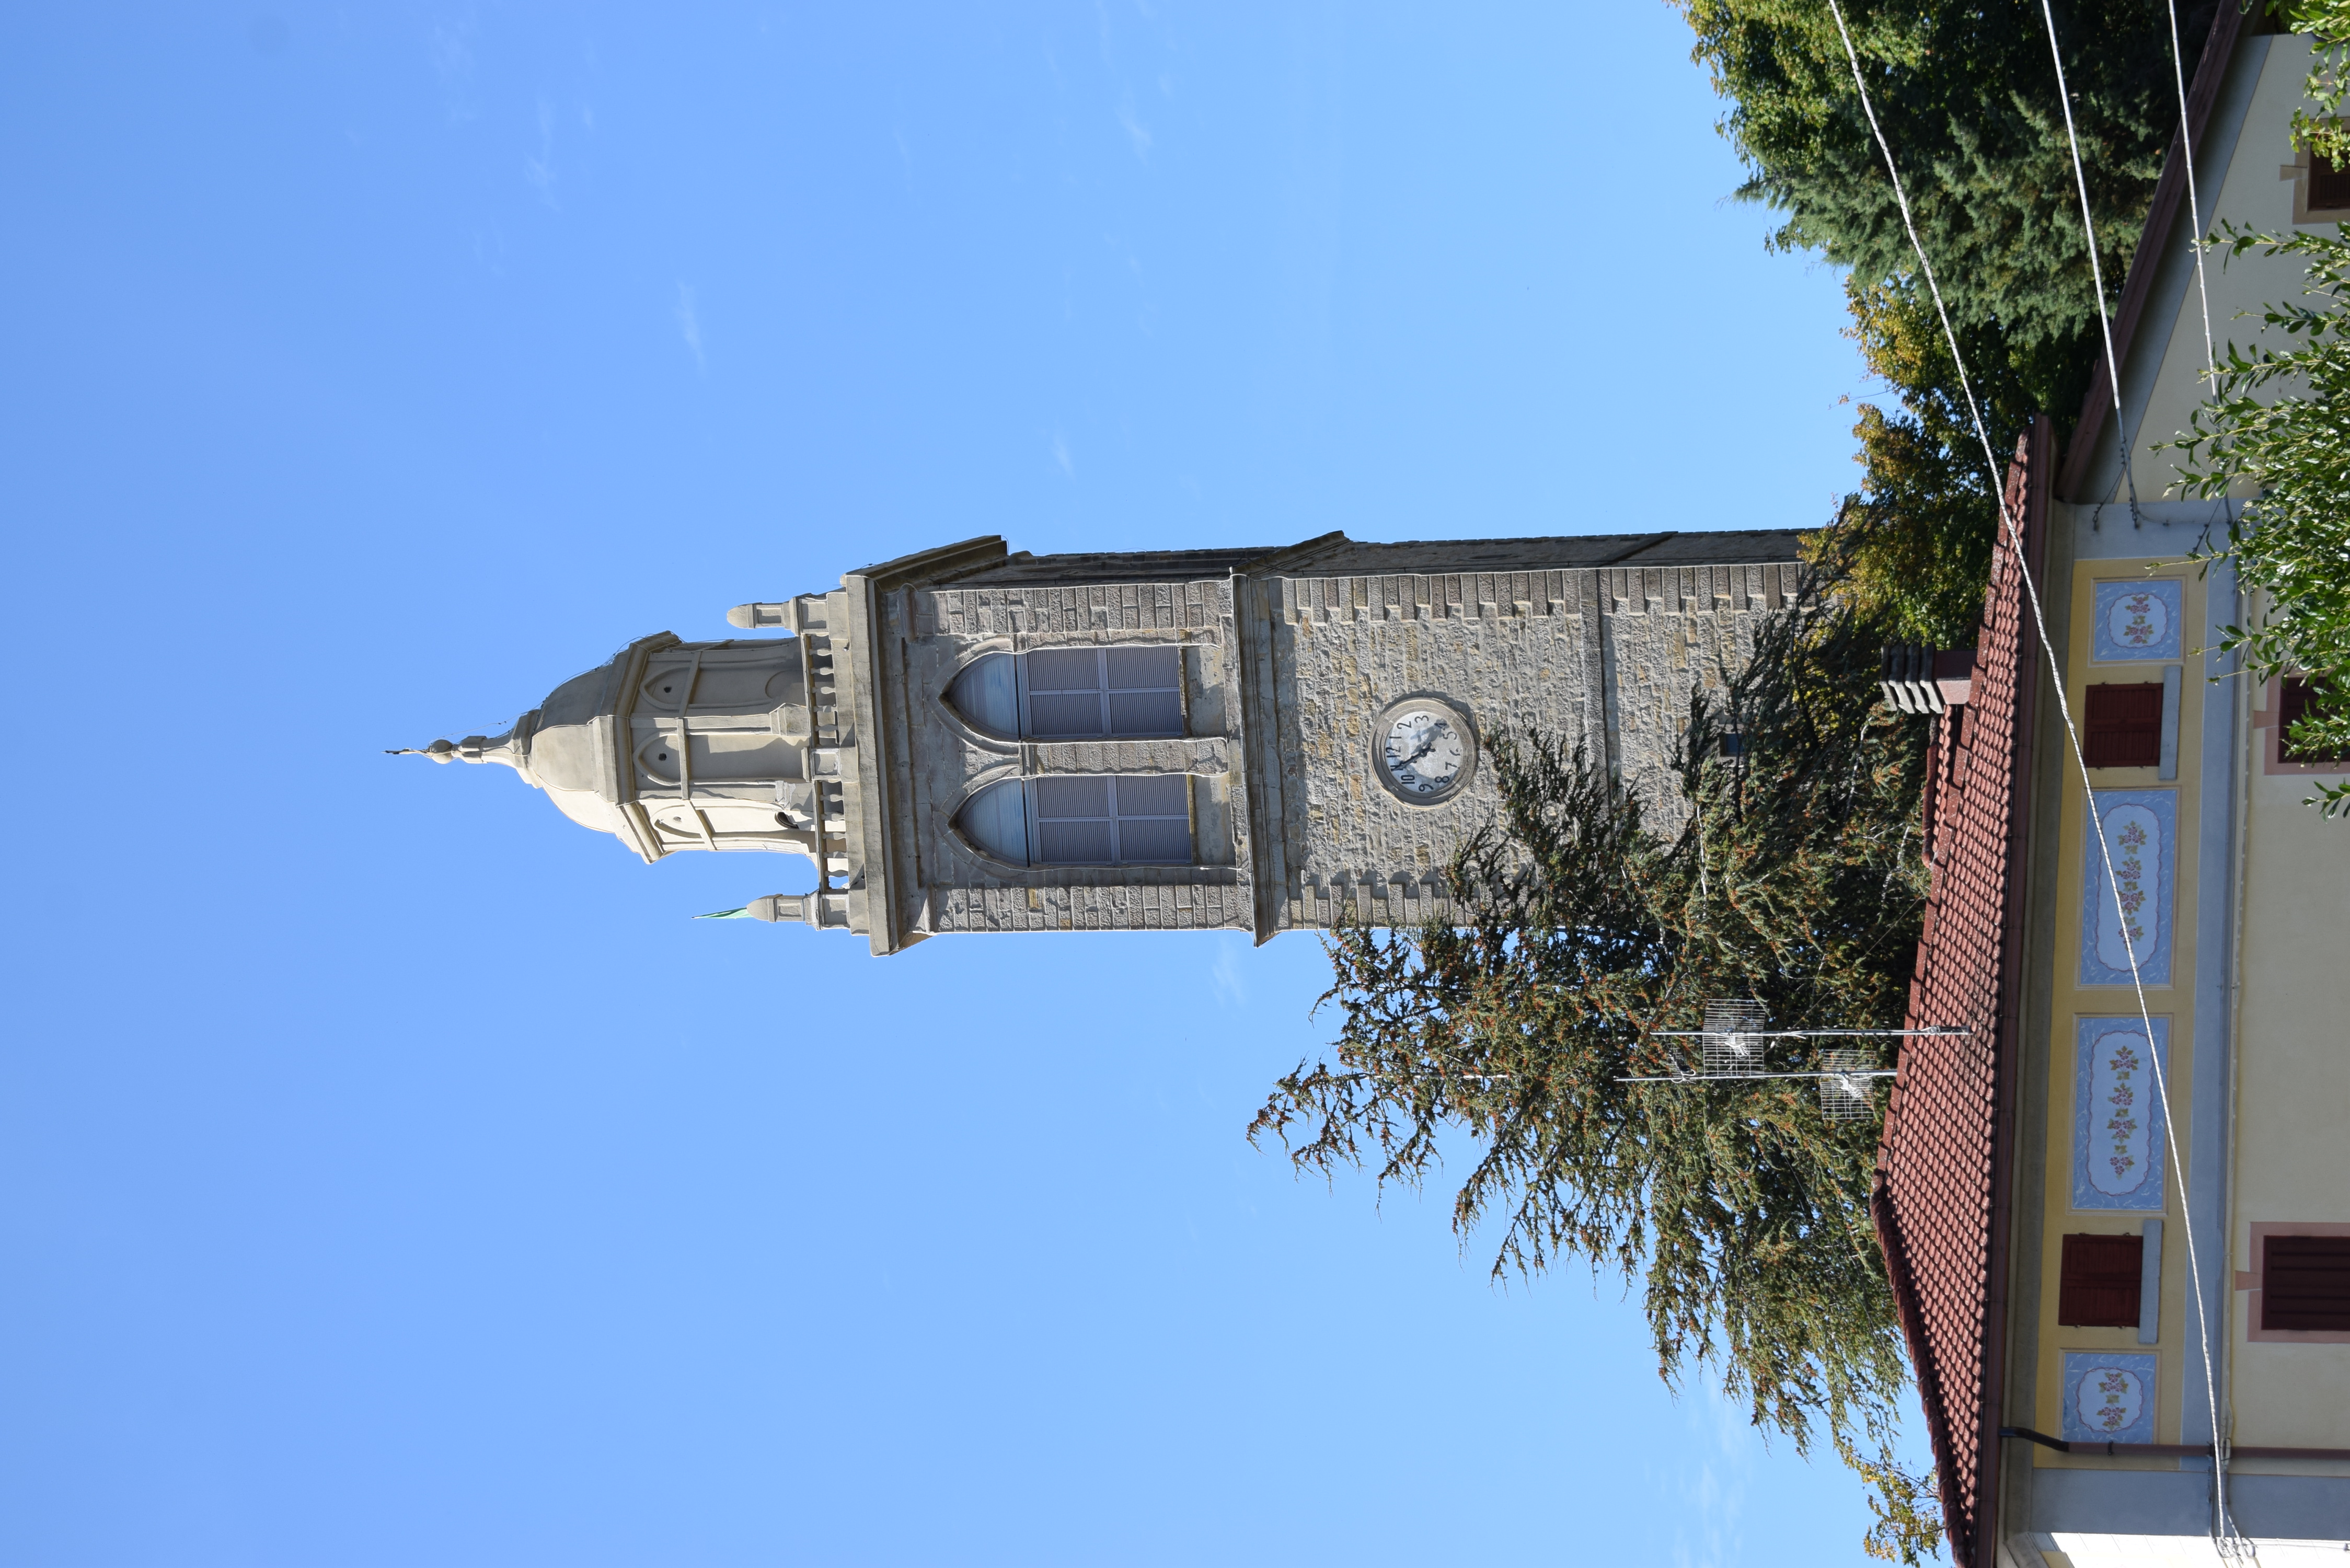 Campanile maggiore della chiesa parrocchiale di S. Maria Assunta (torre, campanaria) - Polinago (MO) 